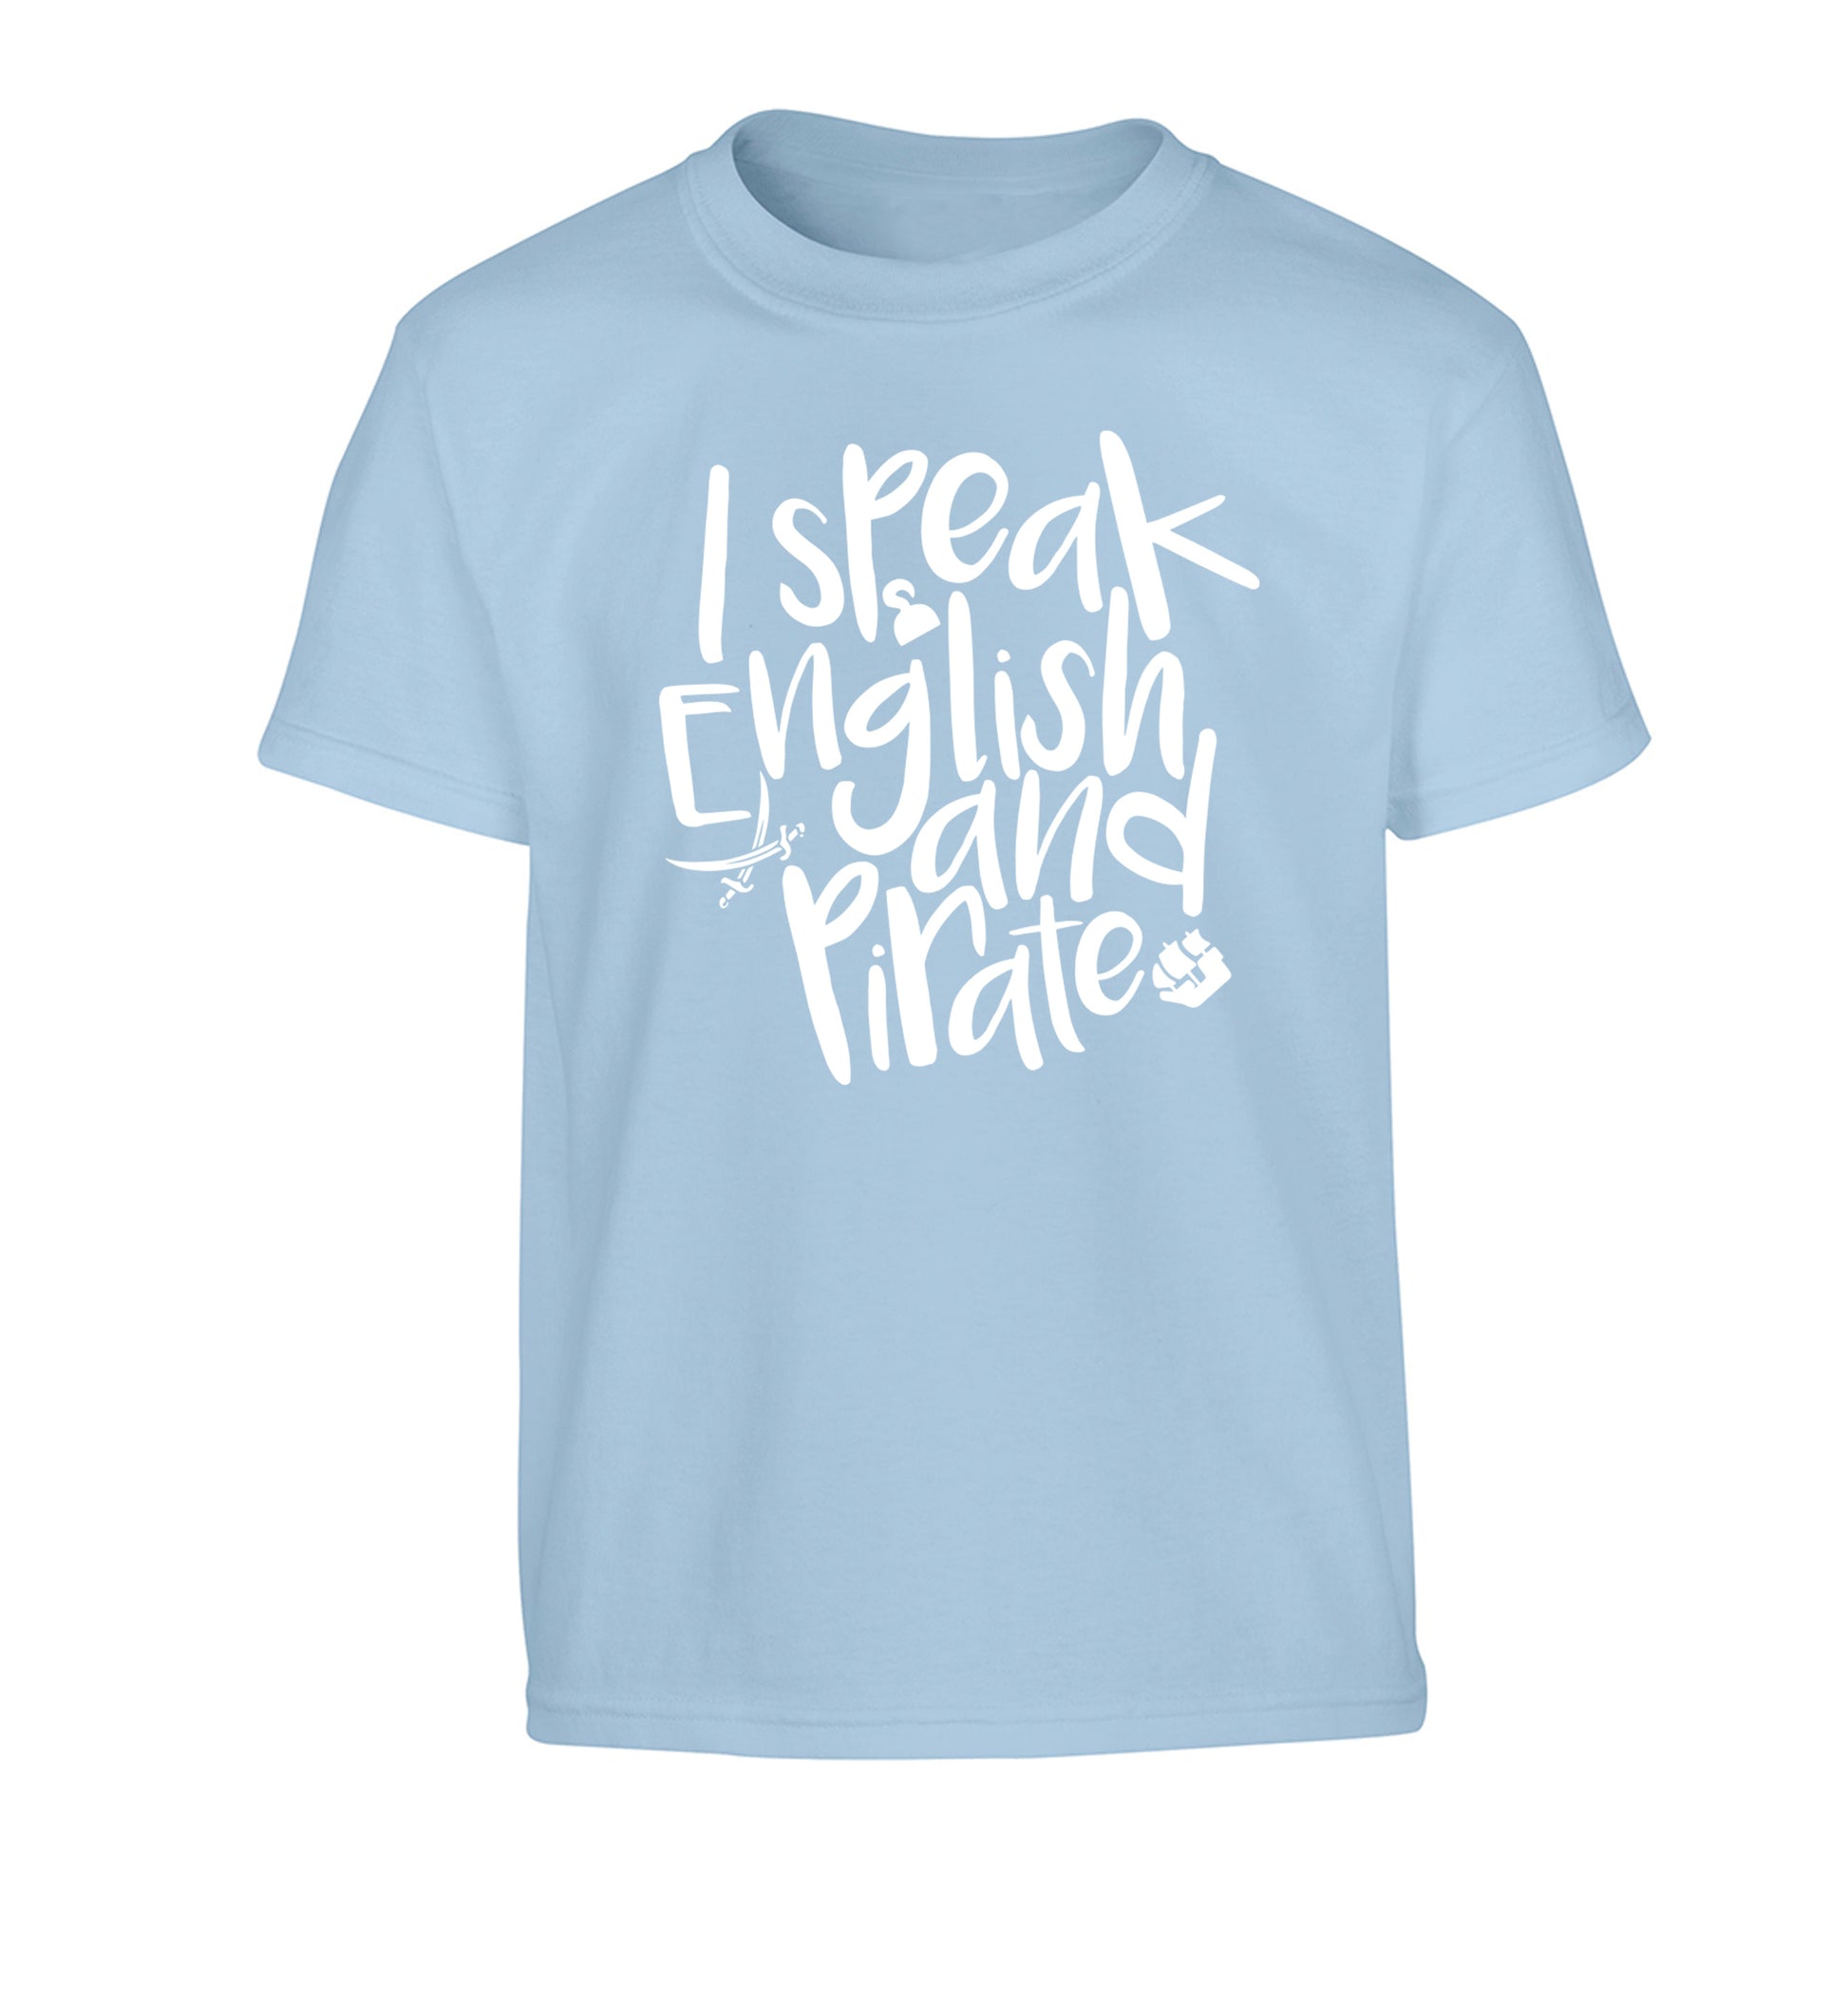 I speak English and pirate Children's light blue Tshirt 12-13 Years